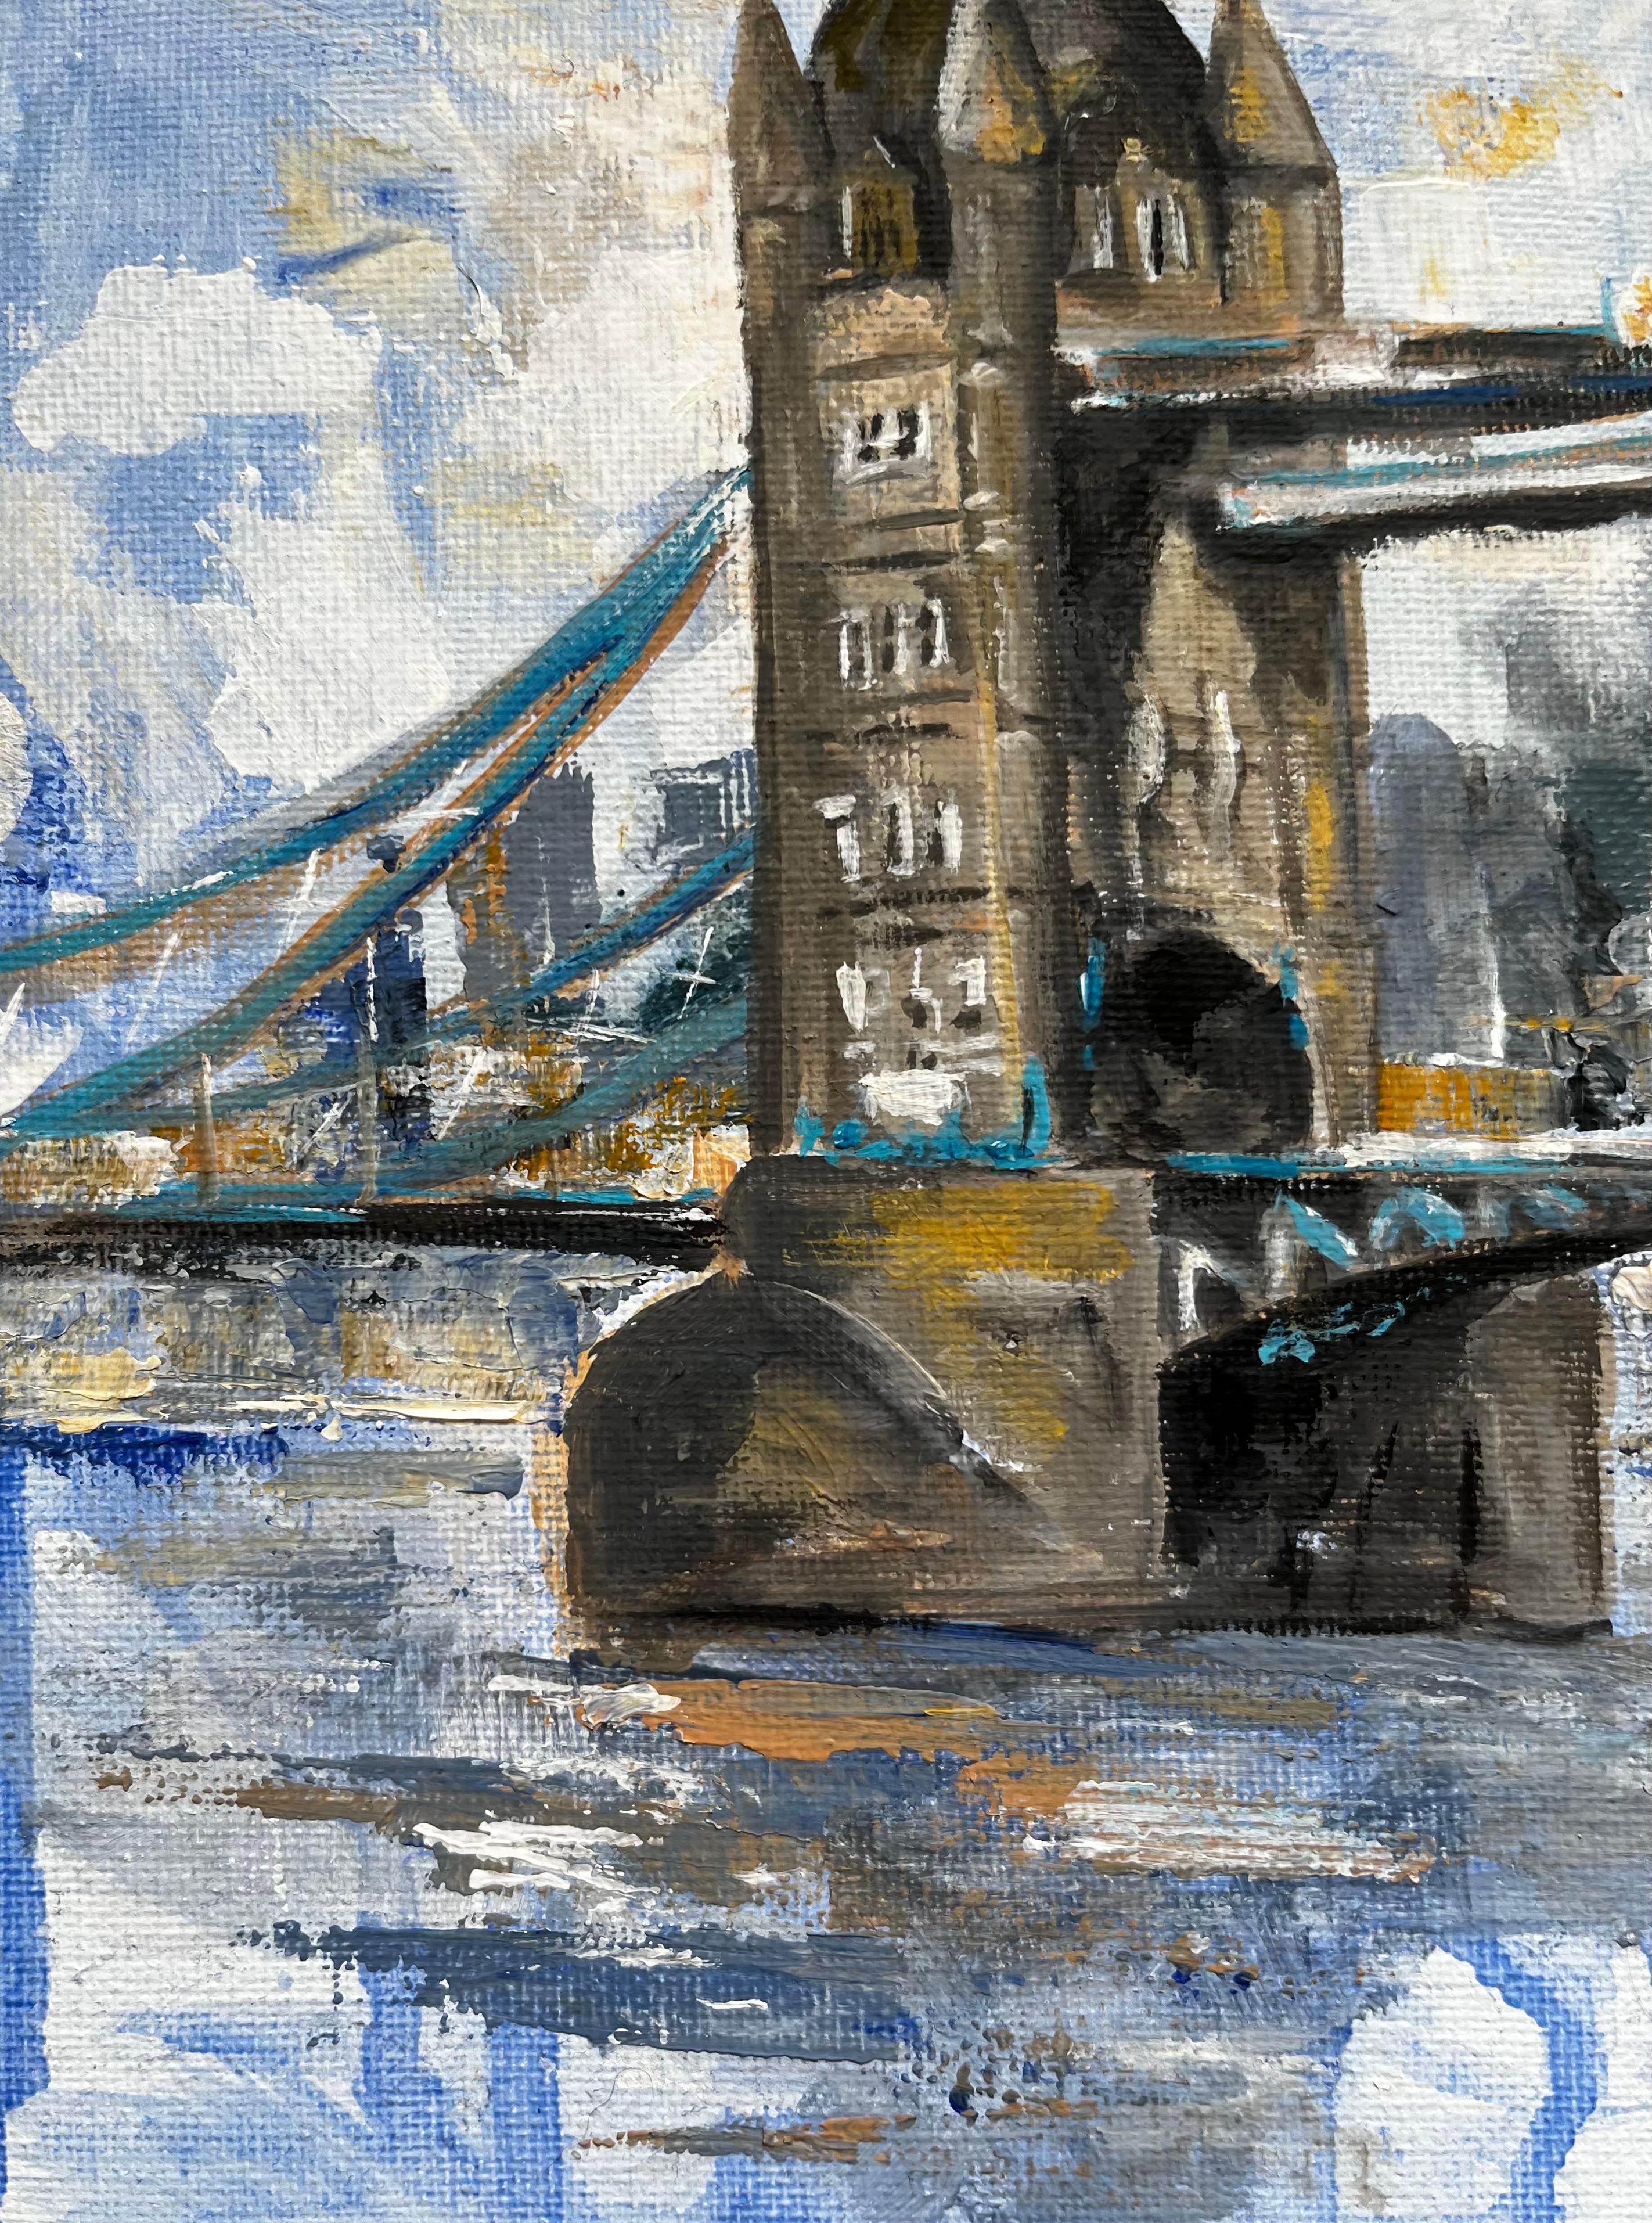 London Bridge, Themse
signiert von Minty Ramsey, britische Zeitgenossin 
Acrylgemälde auf Leinwand
9 x 12 Zoll

Wunderschönes Originalgemälde des britischen zeitgenössischen Künstlers Minty Ramsey. 